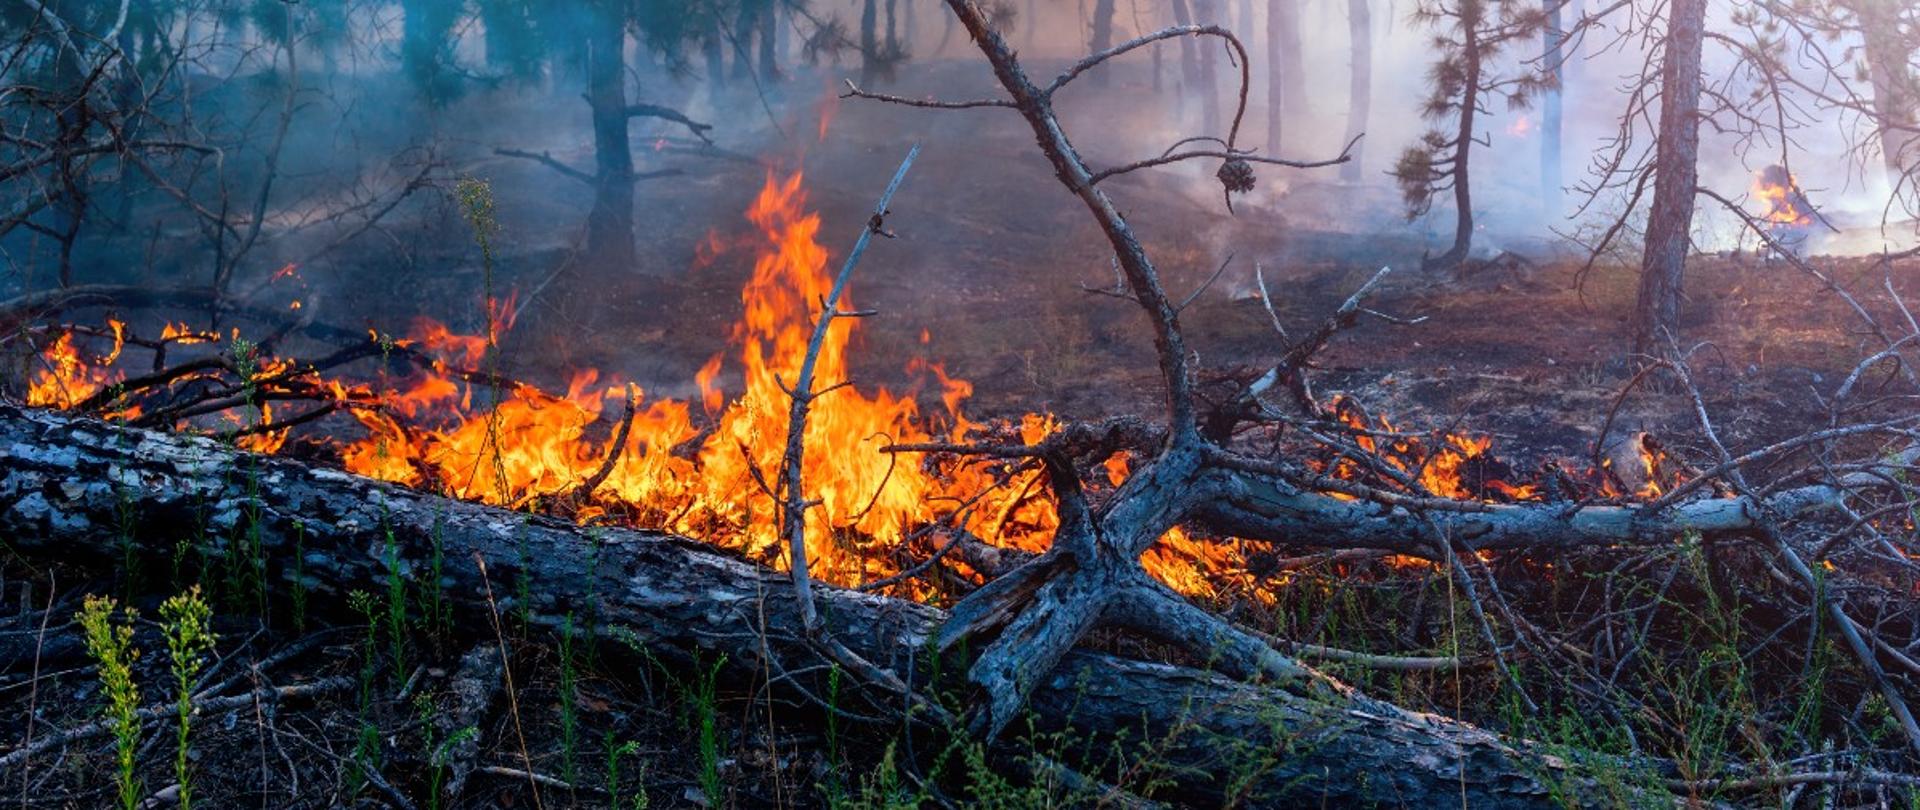 Palące się poszycie lasu, spalone drzewa i gałęzie, duże zadymienie.